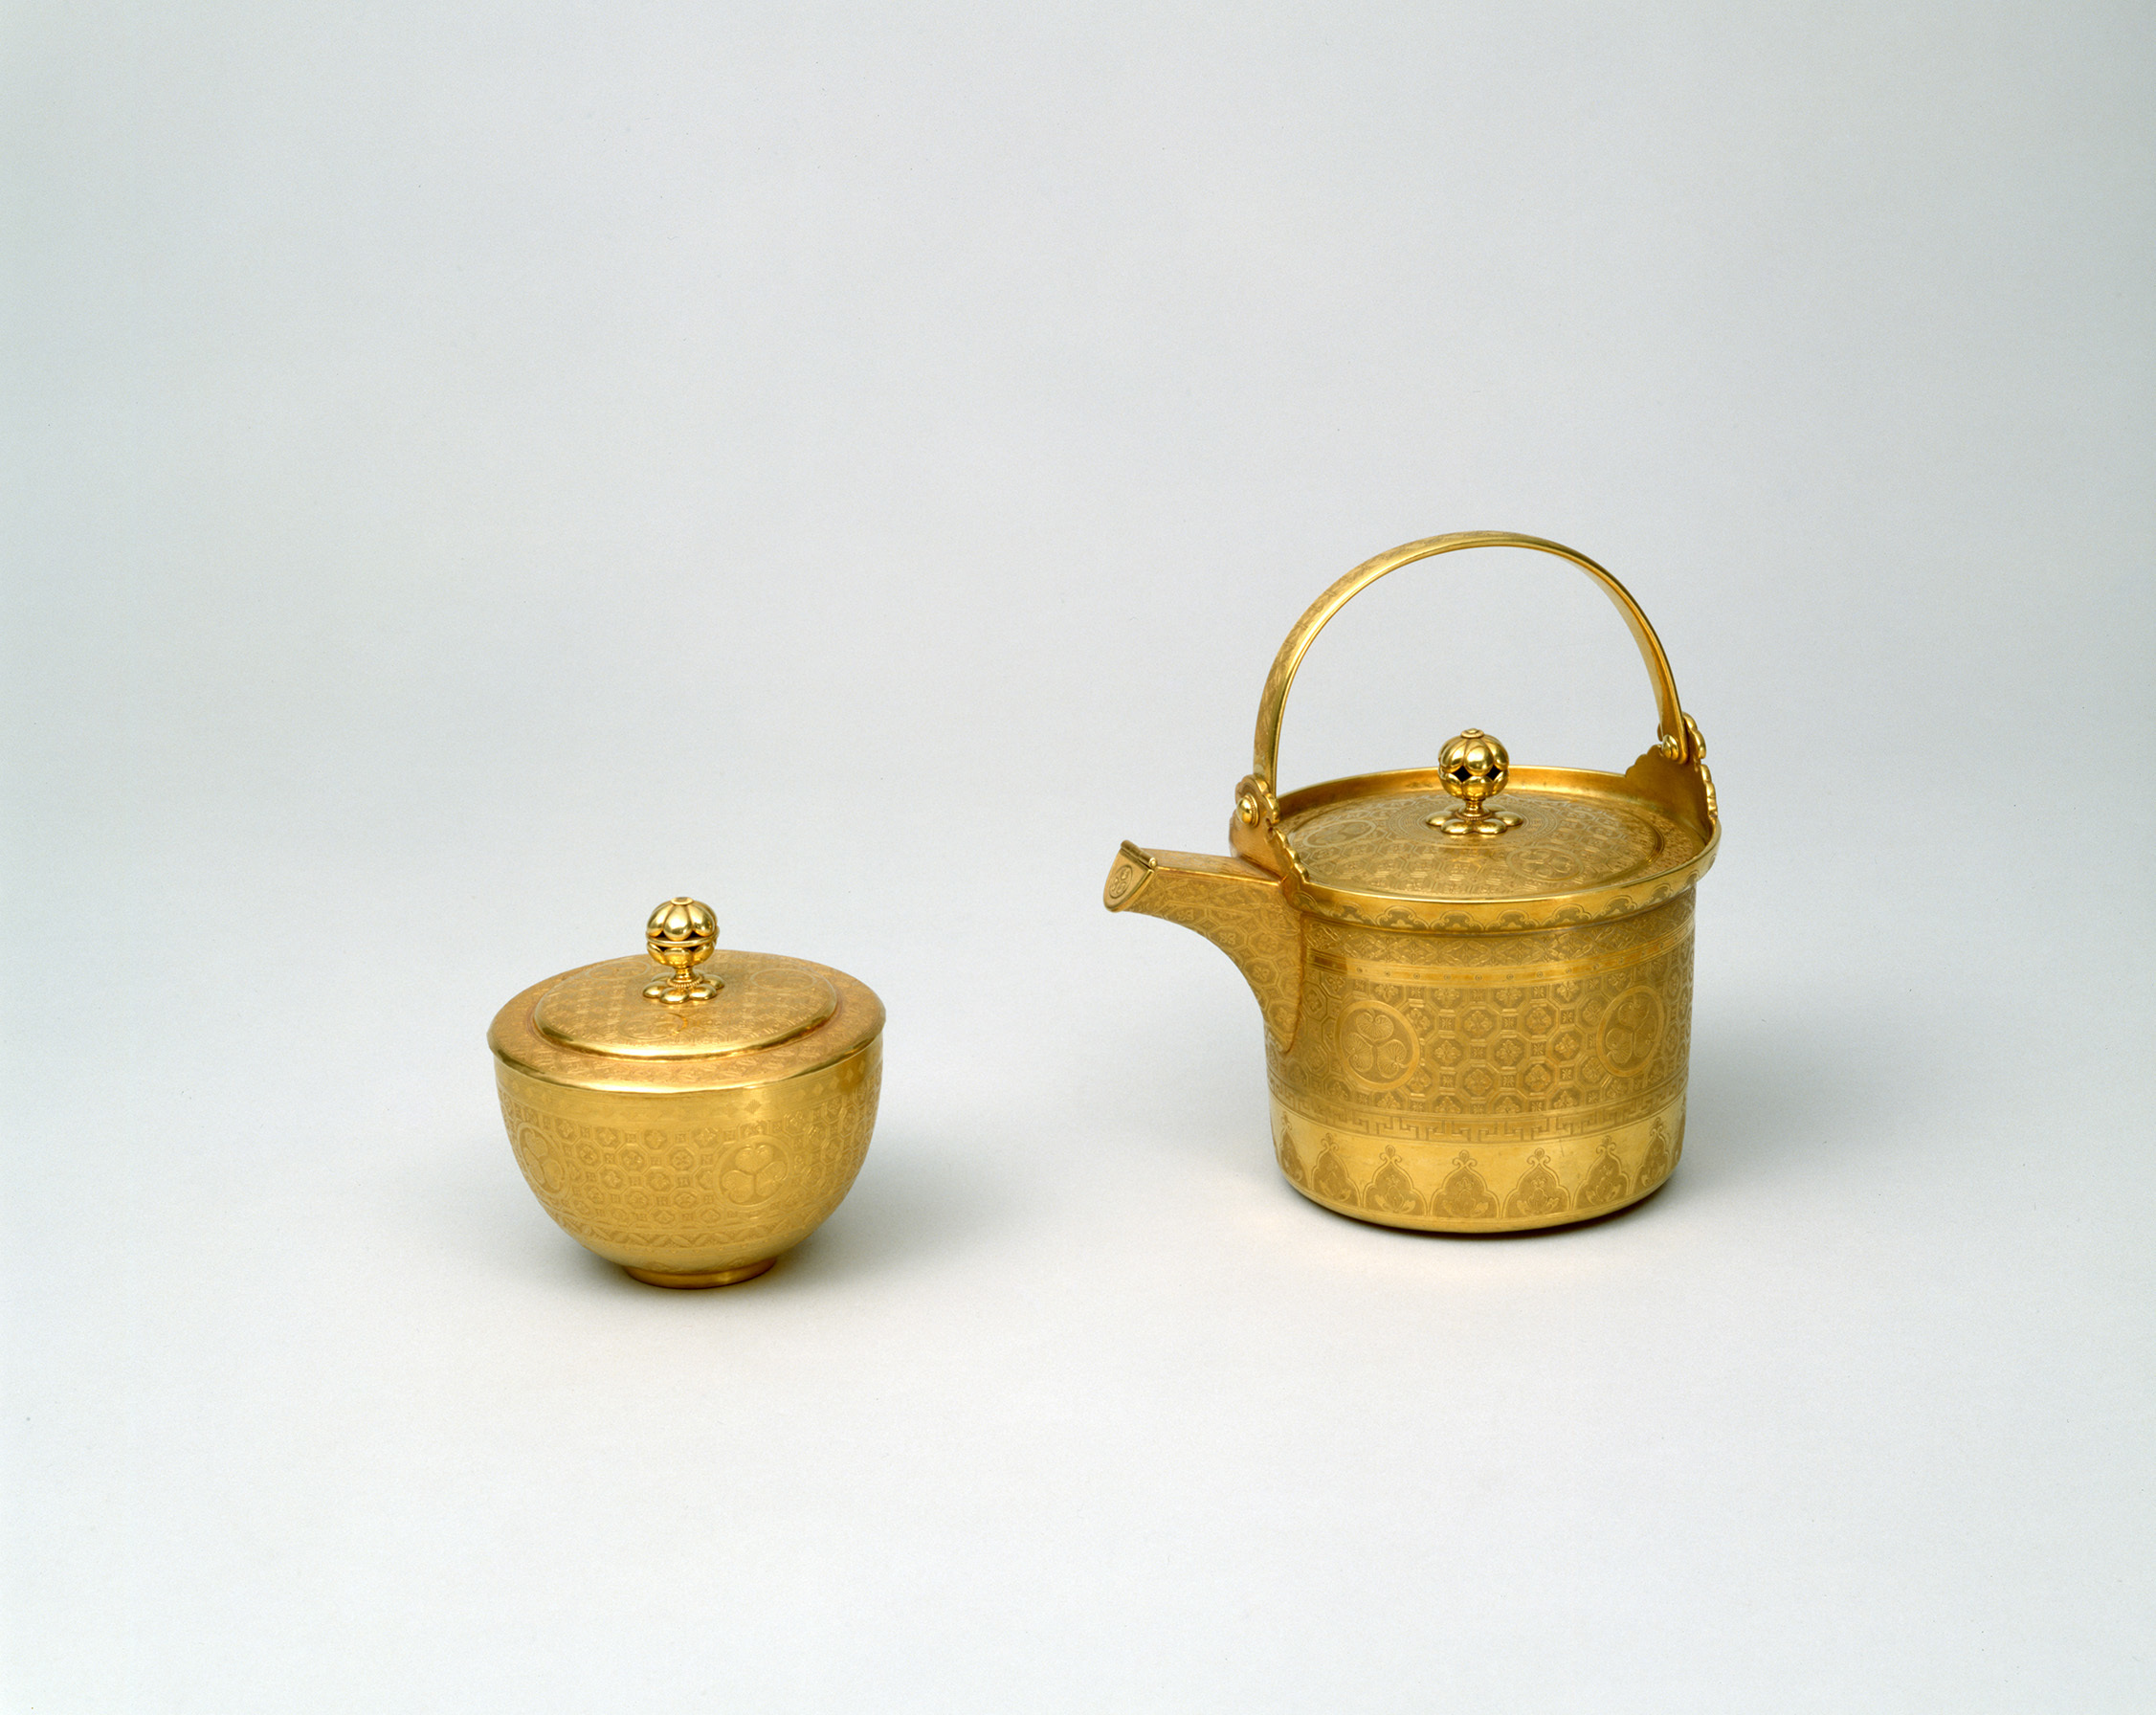 重要文化財 「純金葵紋蜀江文薬茶碗」と「純金葵紋蜀江文薬鍋」、江戸時代 寛永16年(1639)